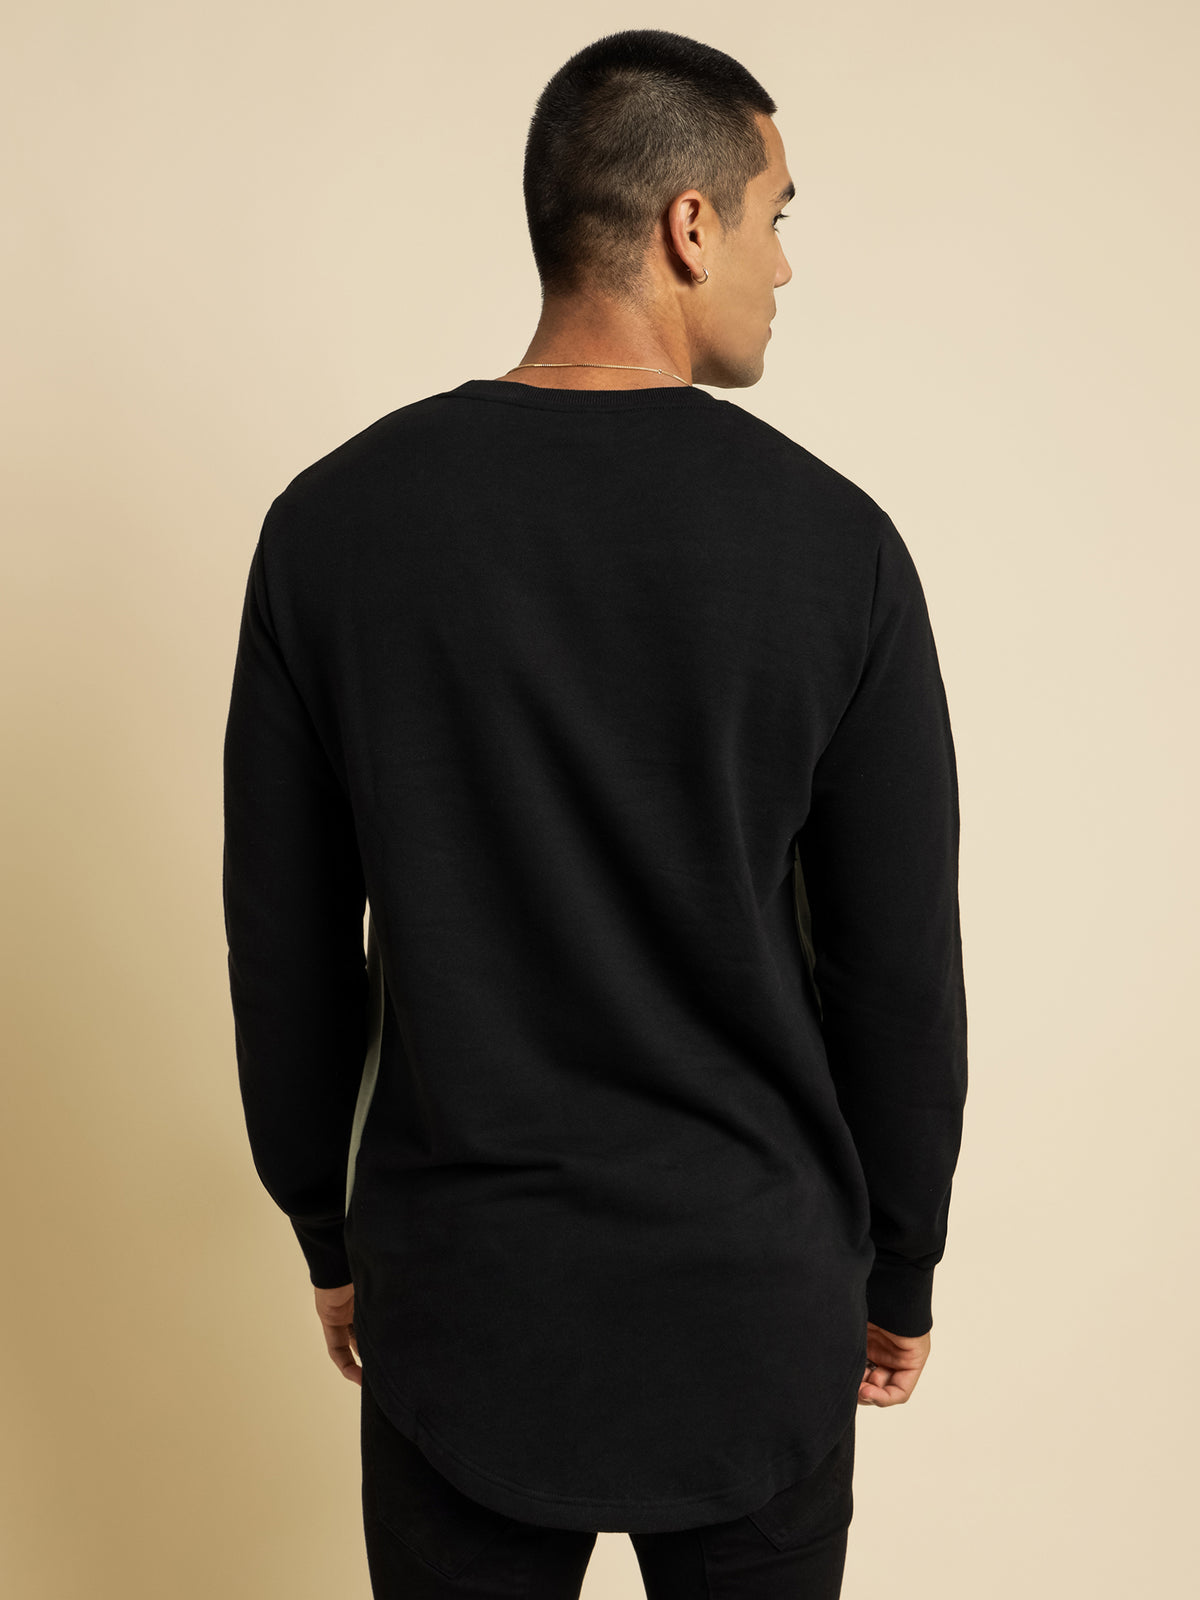 Perazzi Dual Curved Sweater in Black